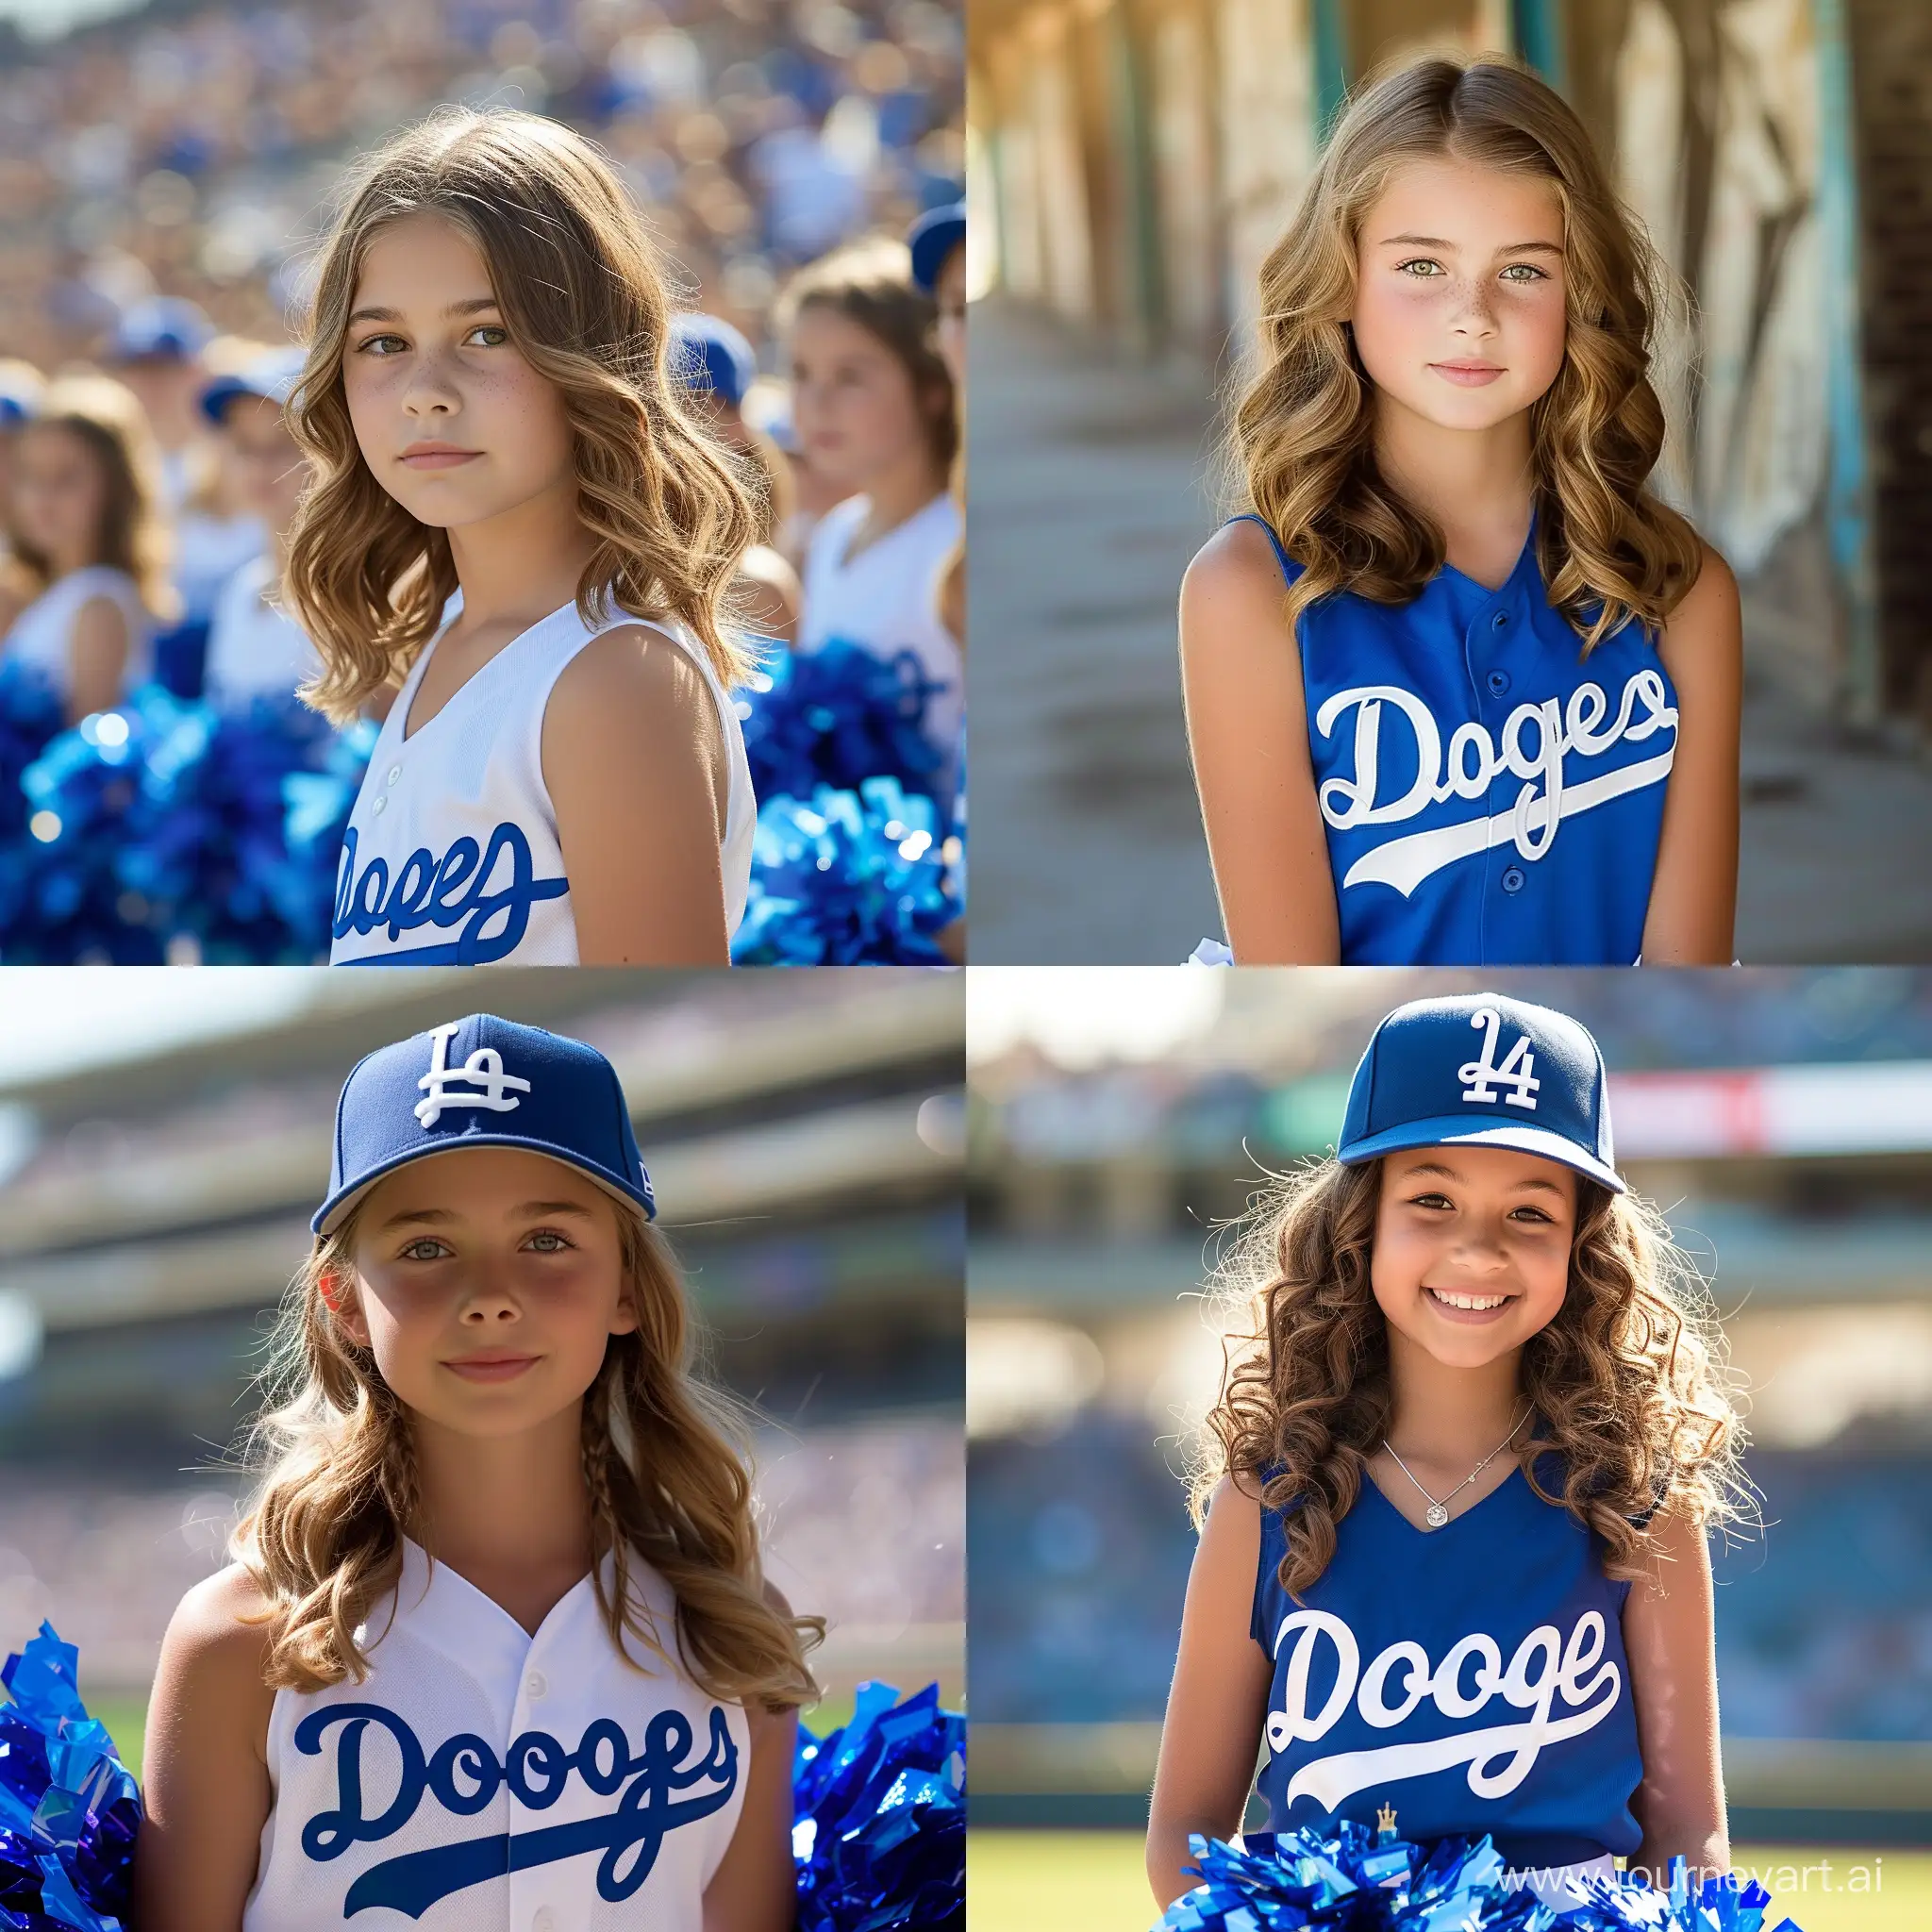 Los Angeles Dodgers 13-14 year old cheerleader